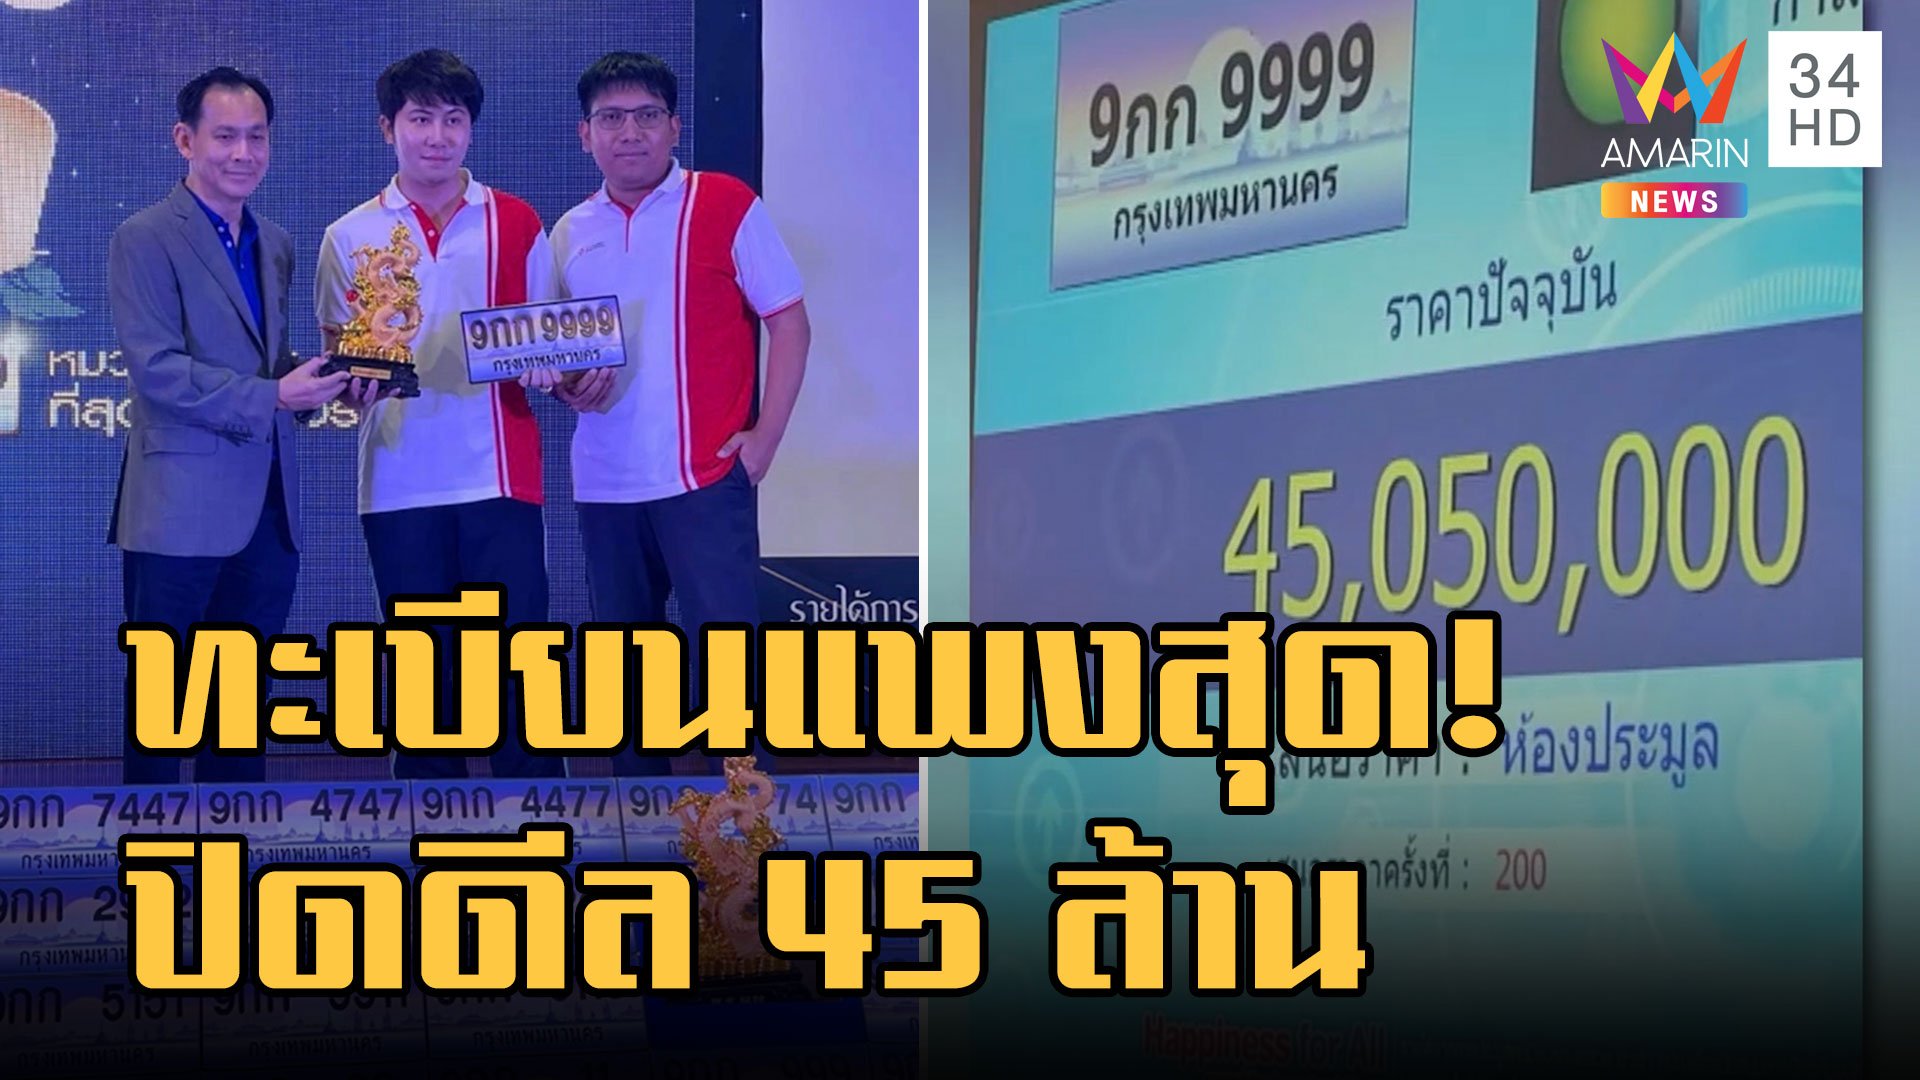 9 กก 9999 ป้ายทะเบียนแพงที่สุดในไทย ราคาพุ่ง 45 ล้าน | ข่าวอรุณอมรินทร์ | 11 ธ.ค. 65 | AMARIN TVHD34